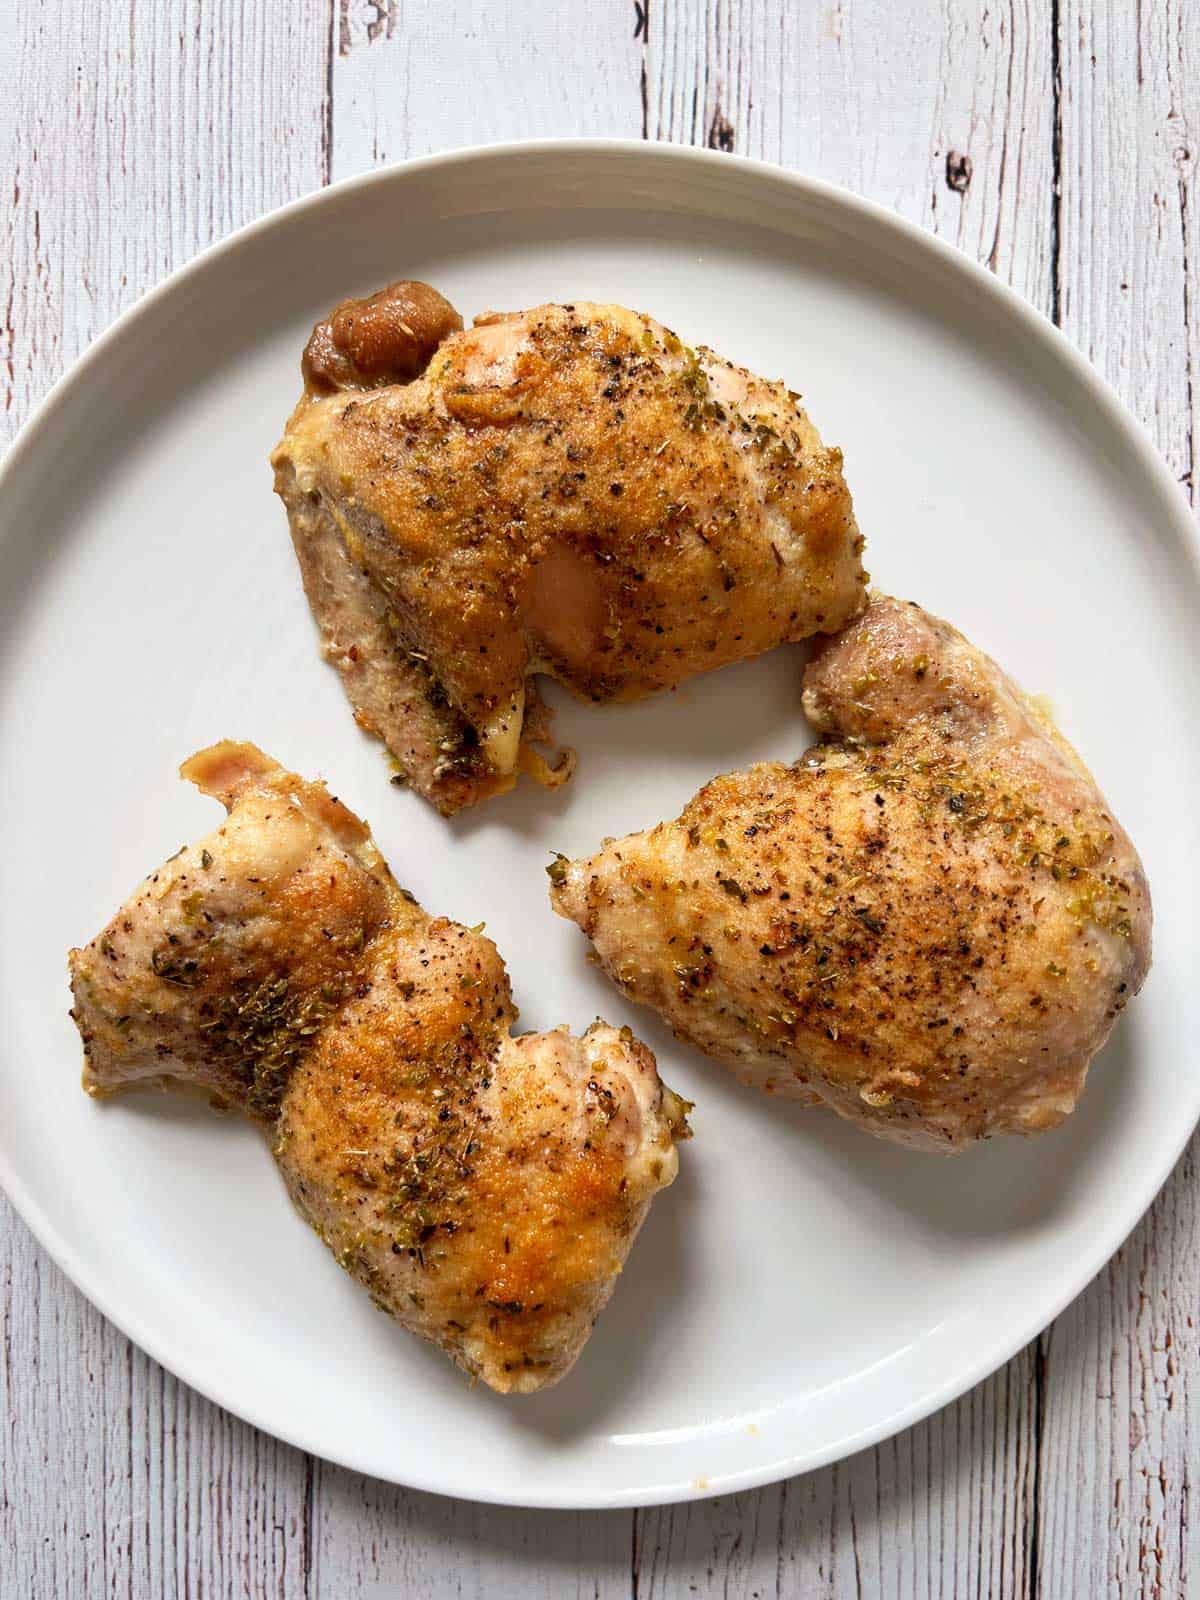 Boneless chicken thighs seasoned with Italian seasoning.